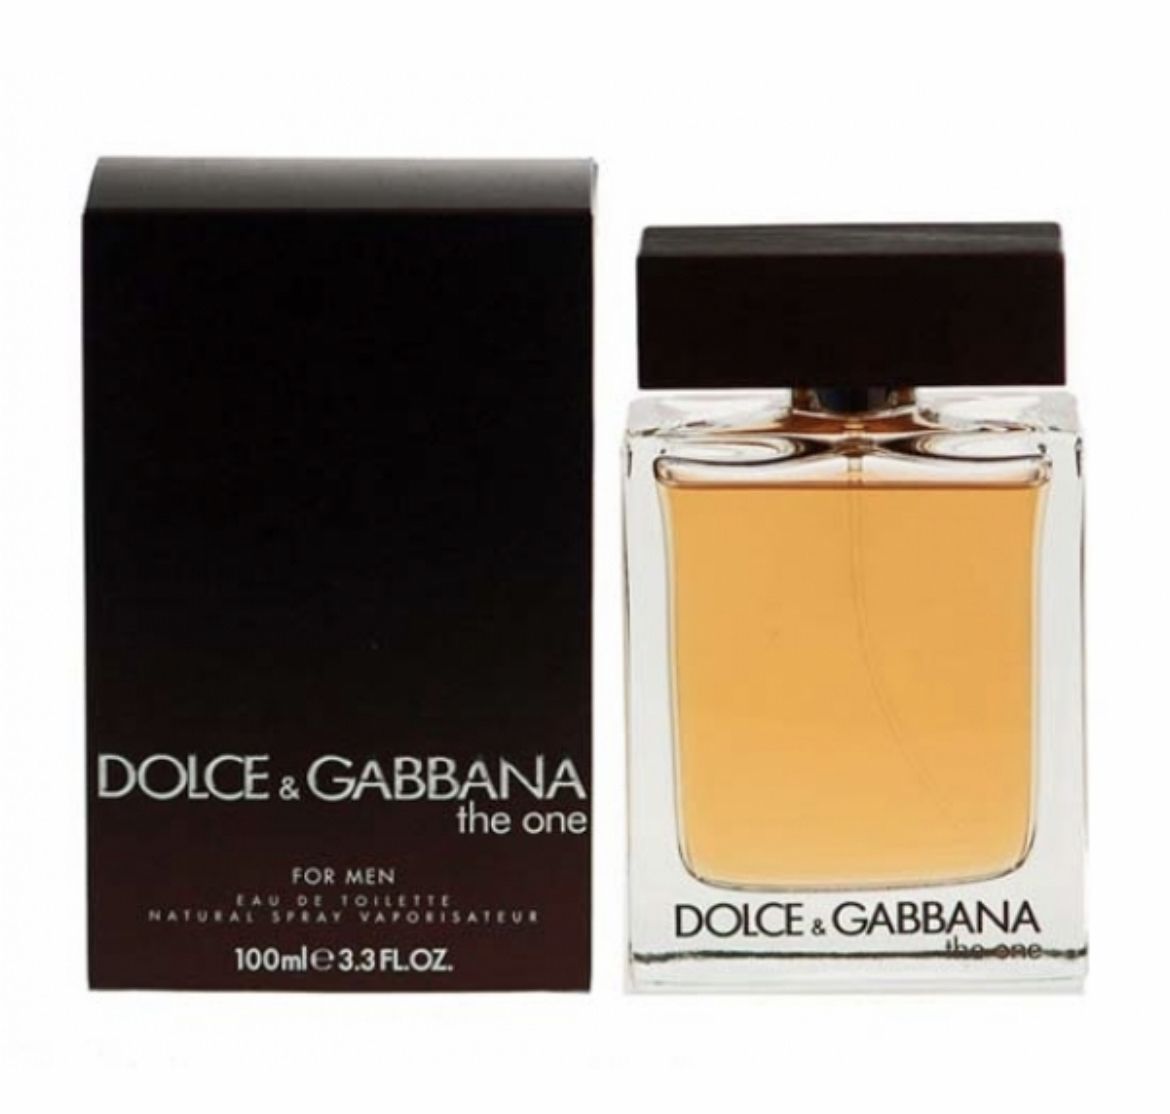 Туалетная мужская вода dolce. Dolce Gabbana the one for men 100 мл. Dolce Gabbana the one for men 100ml. Dolce Gabbana the one for men 100ml EDT. Dolce Gabbana the one 100ml.